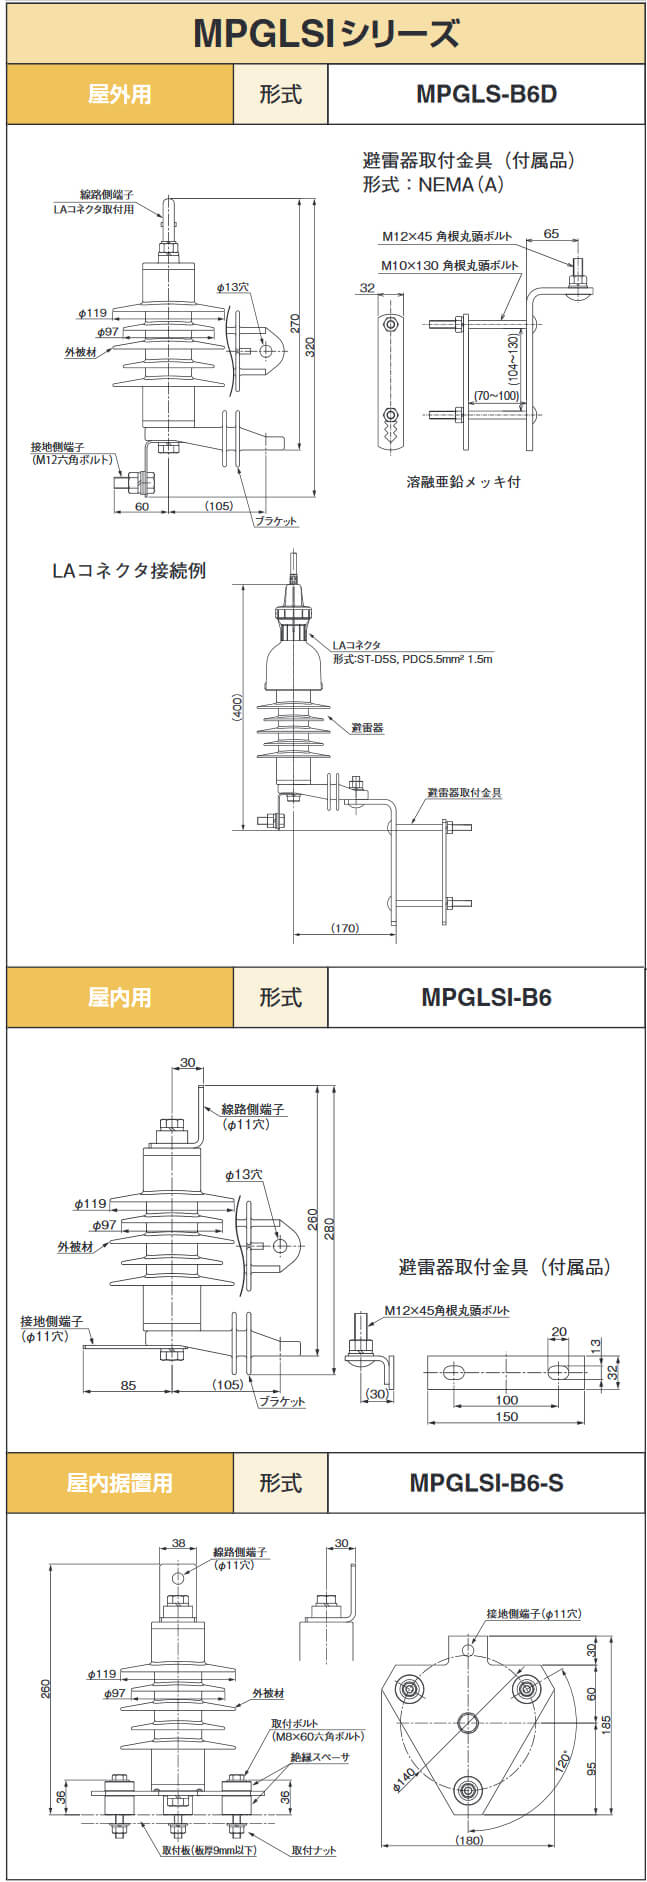 MPGLS-B6D, MPGLSI-B6, MPGLSI-B6-S